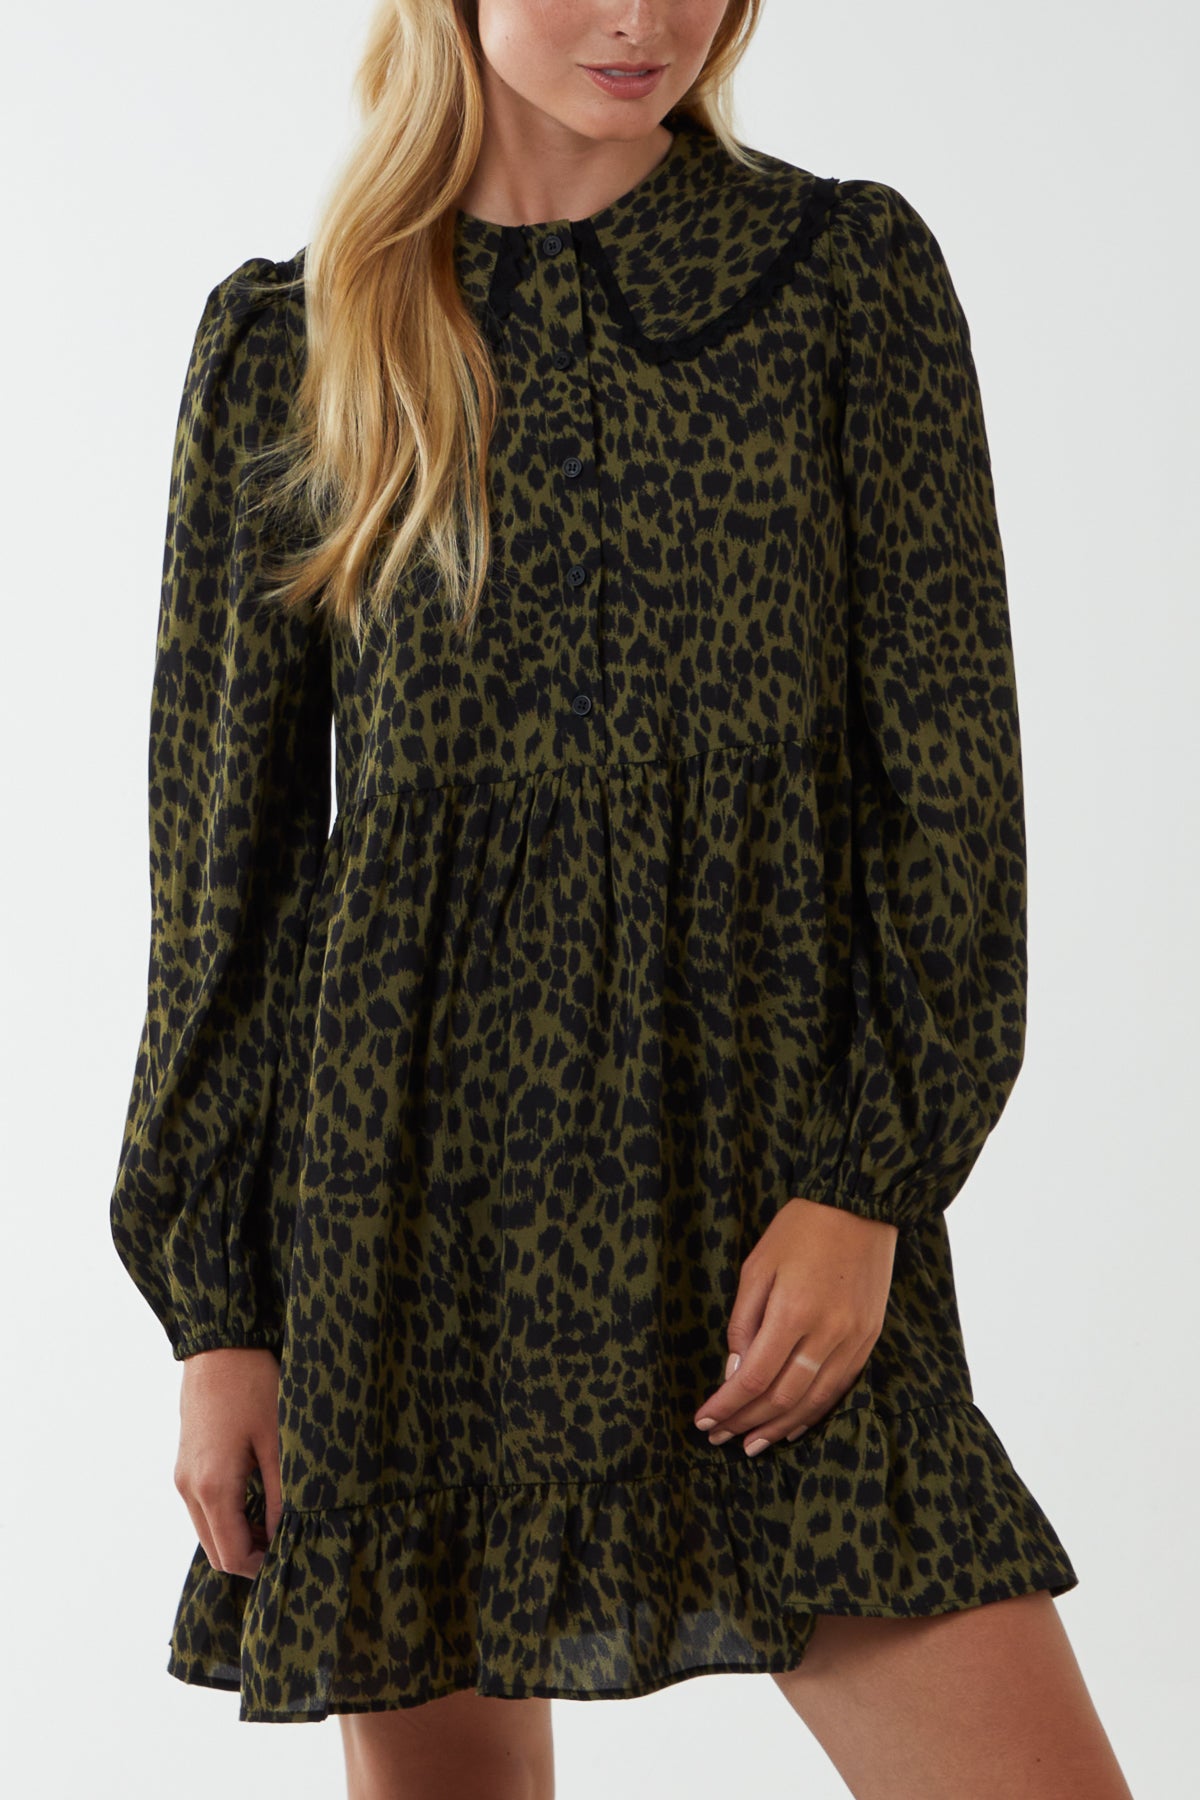 Leopard Lace Trim Peter Pan Collar Smock Shirt Dress